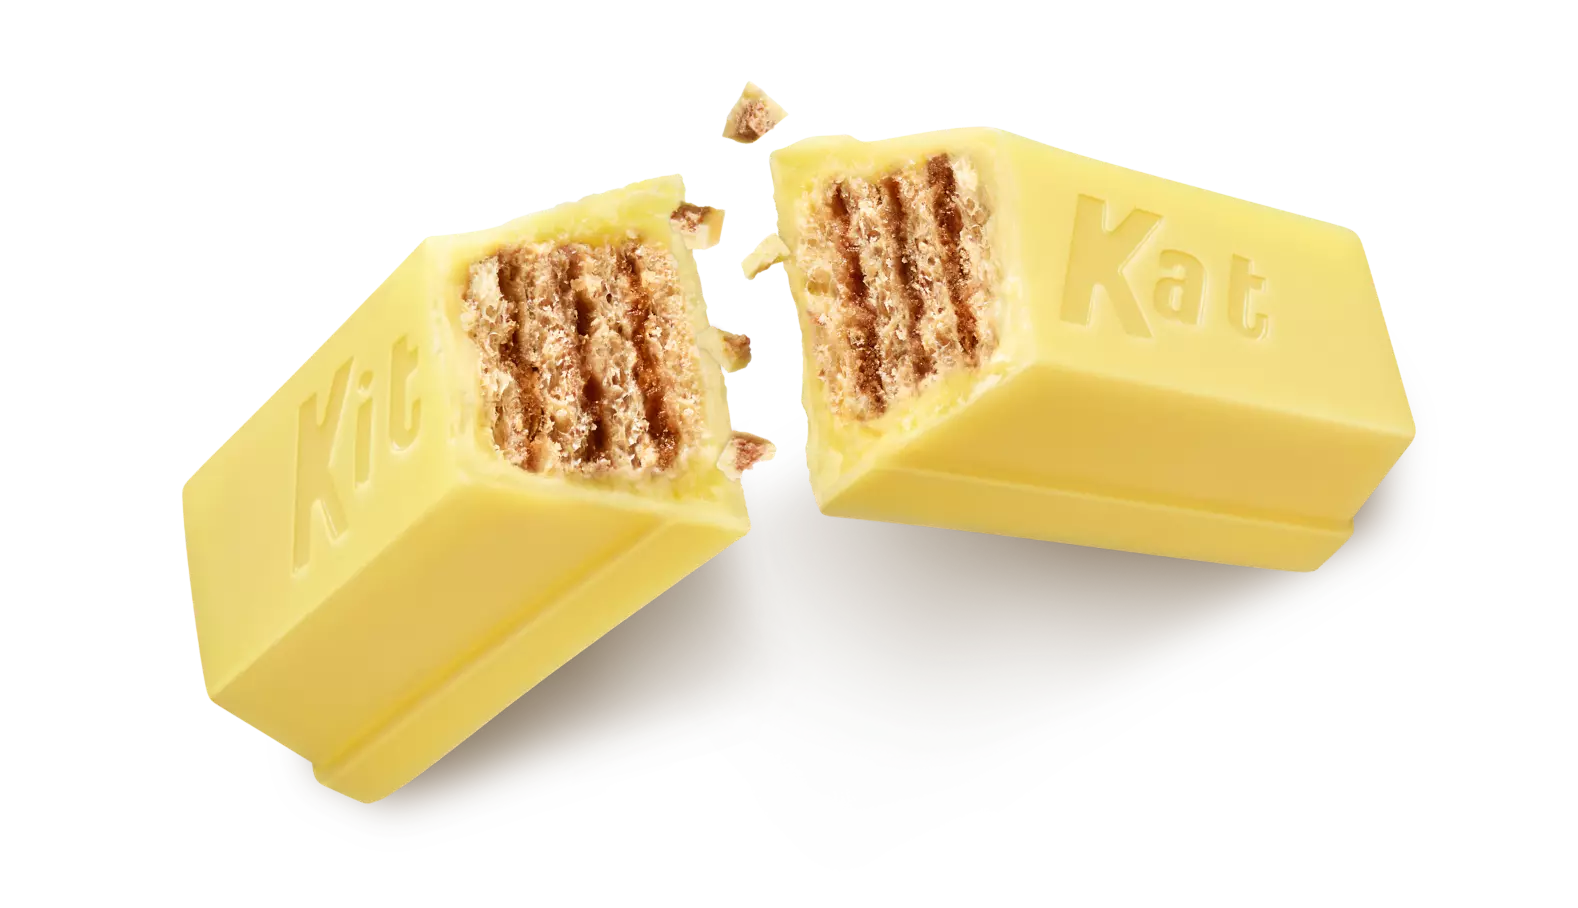 KIT KAT® Lemon Crisp Candy Bars, 1.5 oz, 6 pack - Out of Package